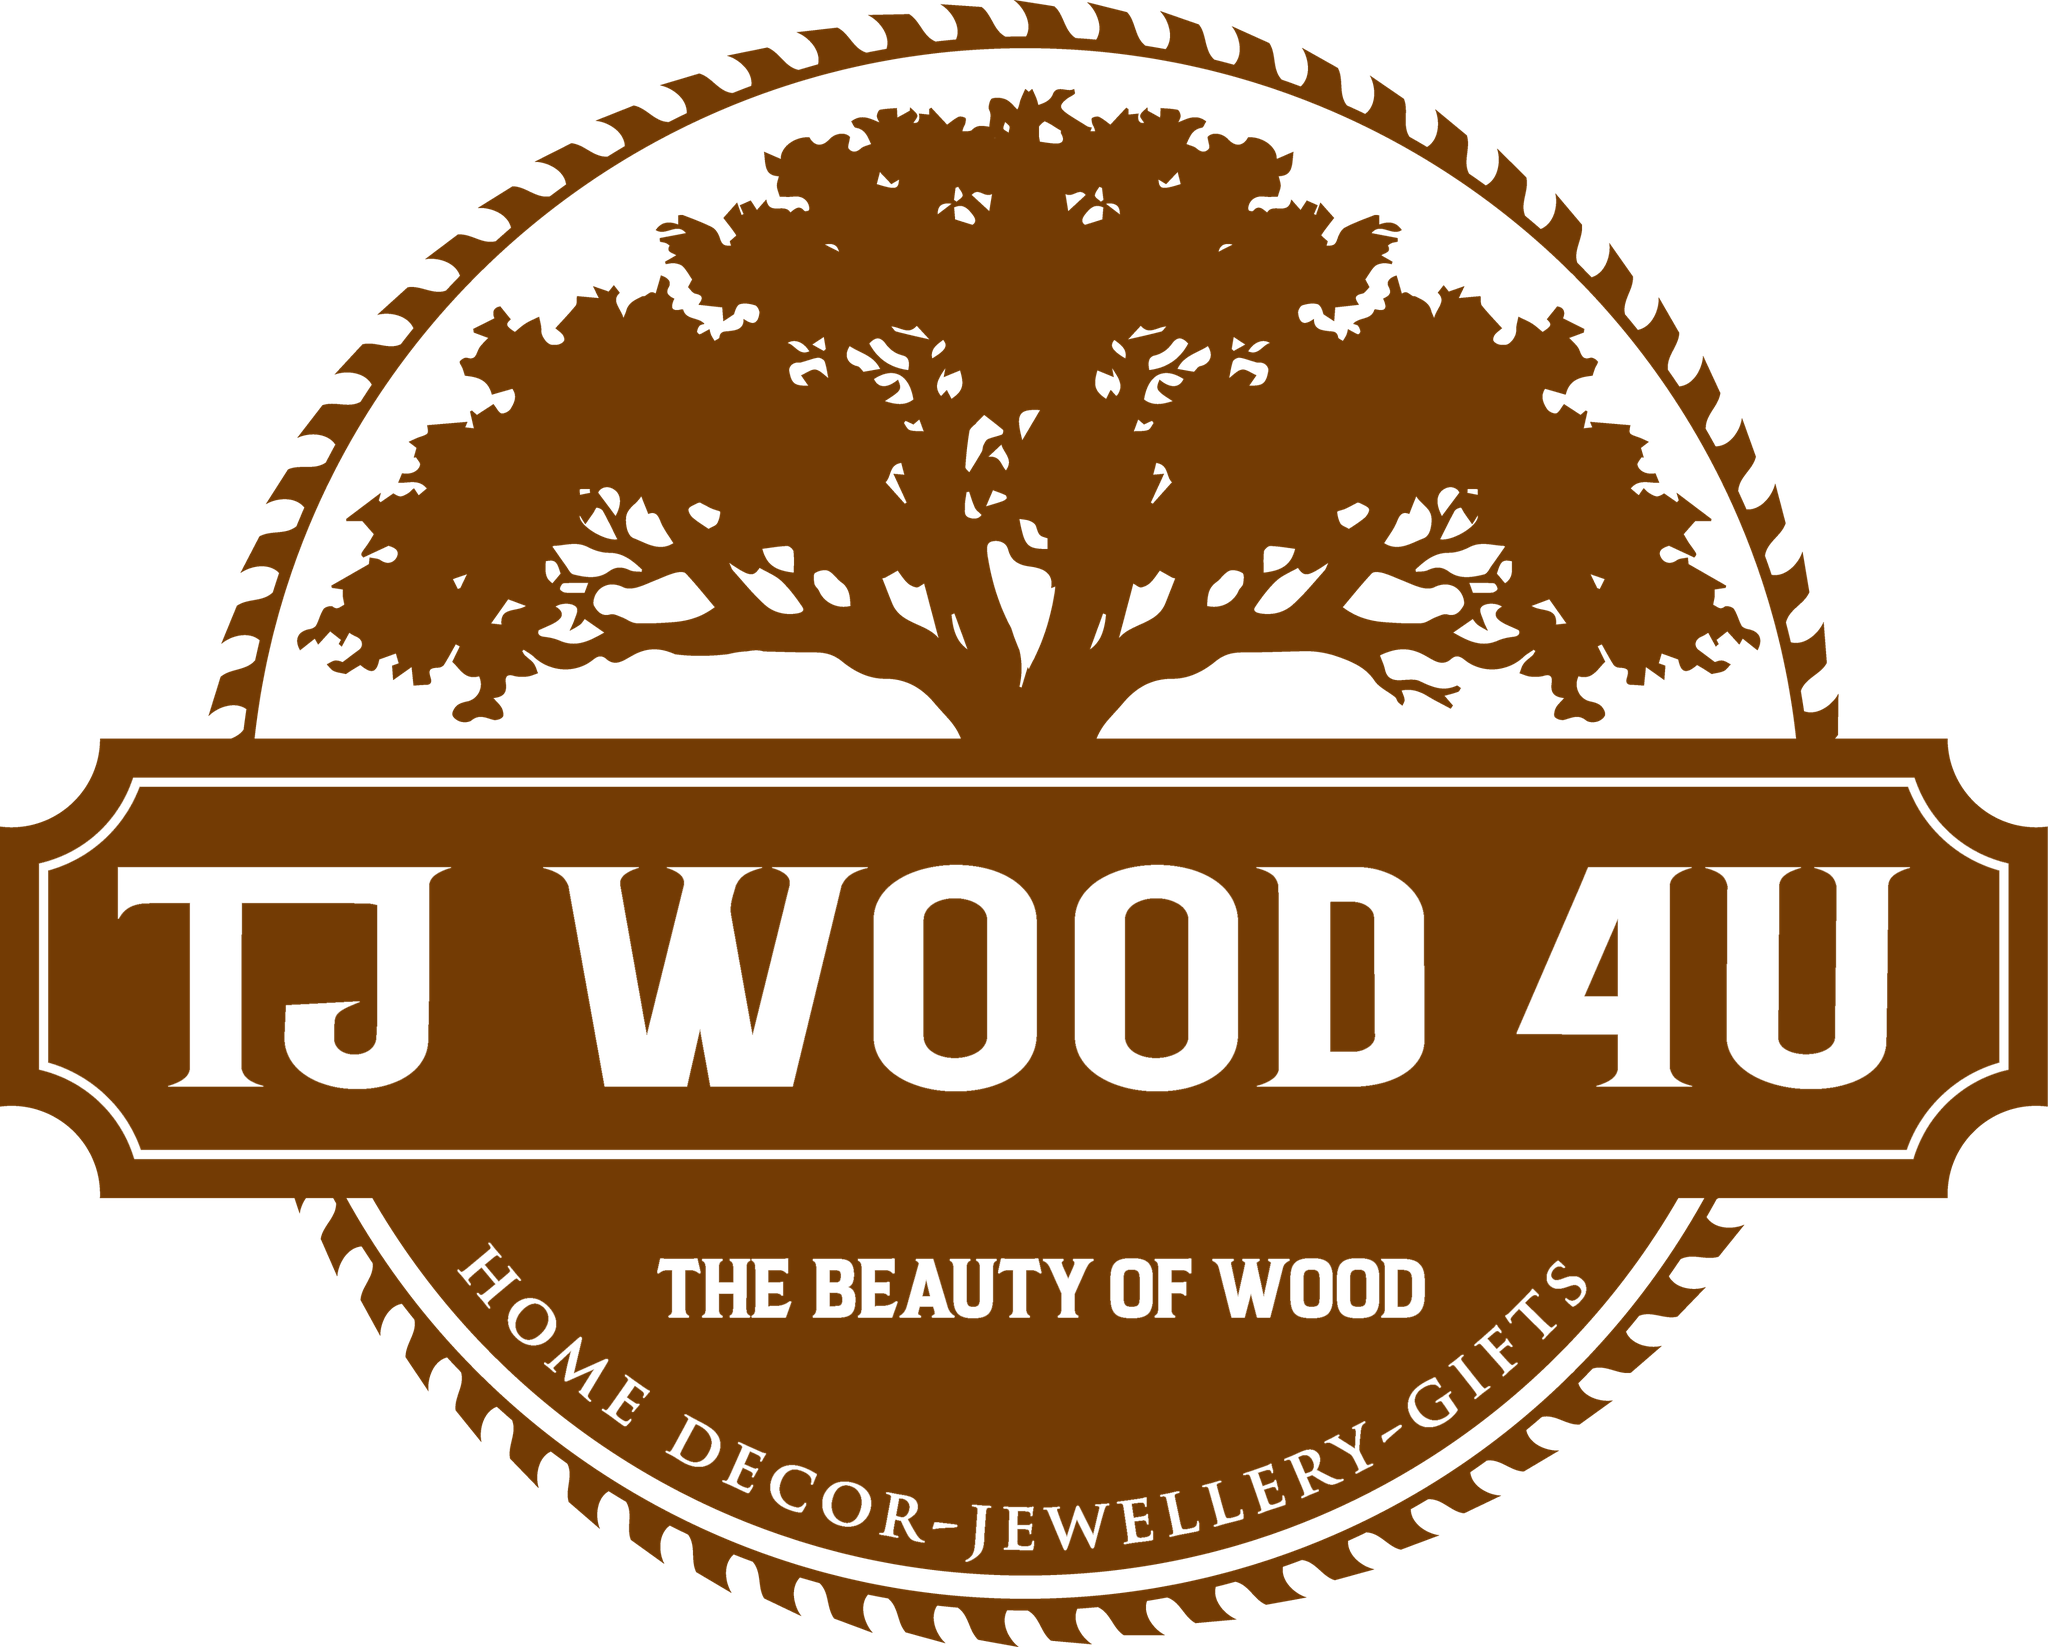 TJ Wood 4U